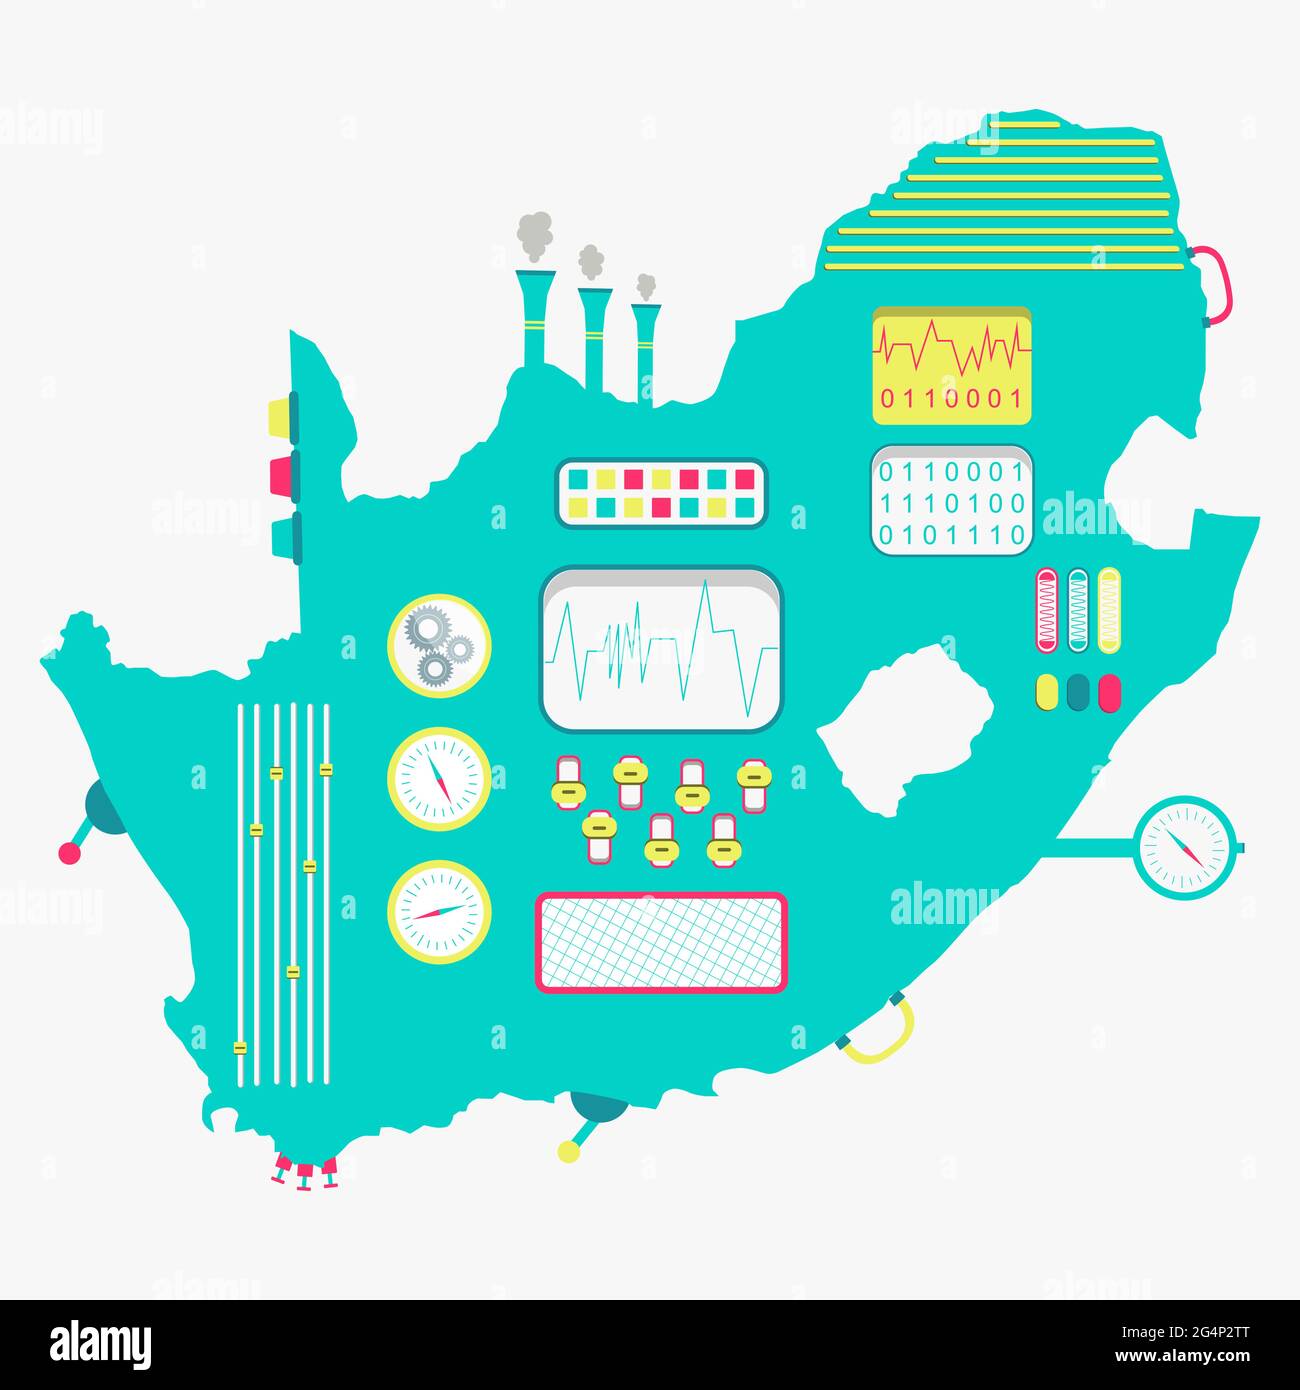 Karte von Südafrika wie eine niedliche Maschine mit Knöpfen, Tafeln und Hebeln. Isoliert. Weißer Hintergrund. Stock Vektor